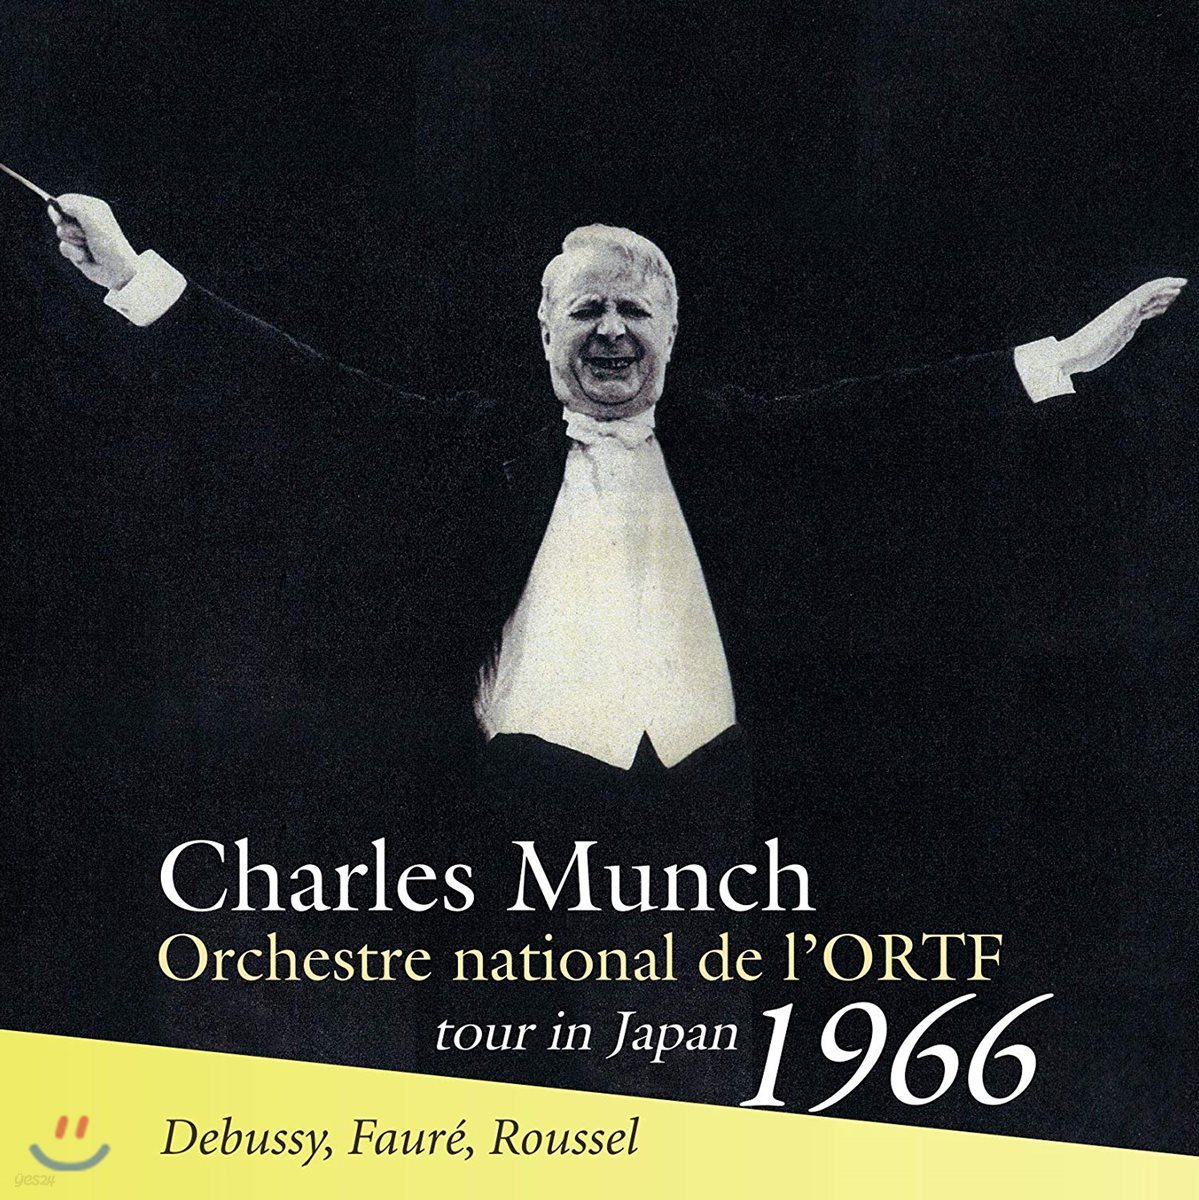 Charles Munch 드뷔시: 교향시 '바다' / 포레: 펠레아스와 멜리장드 모음곡 / 알베르 루셀: 교향곡 3번 - 샤를 뮌시